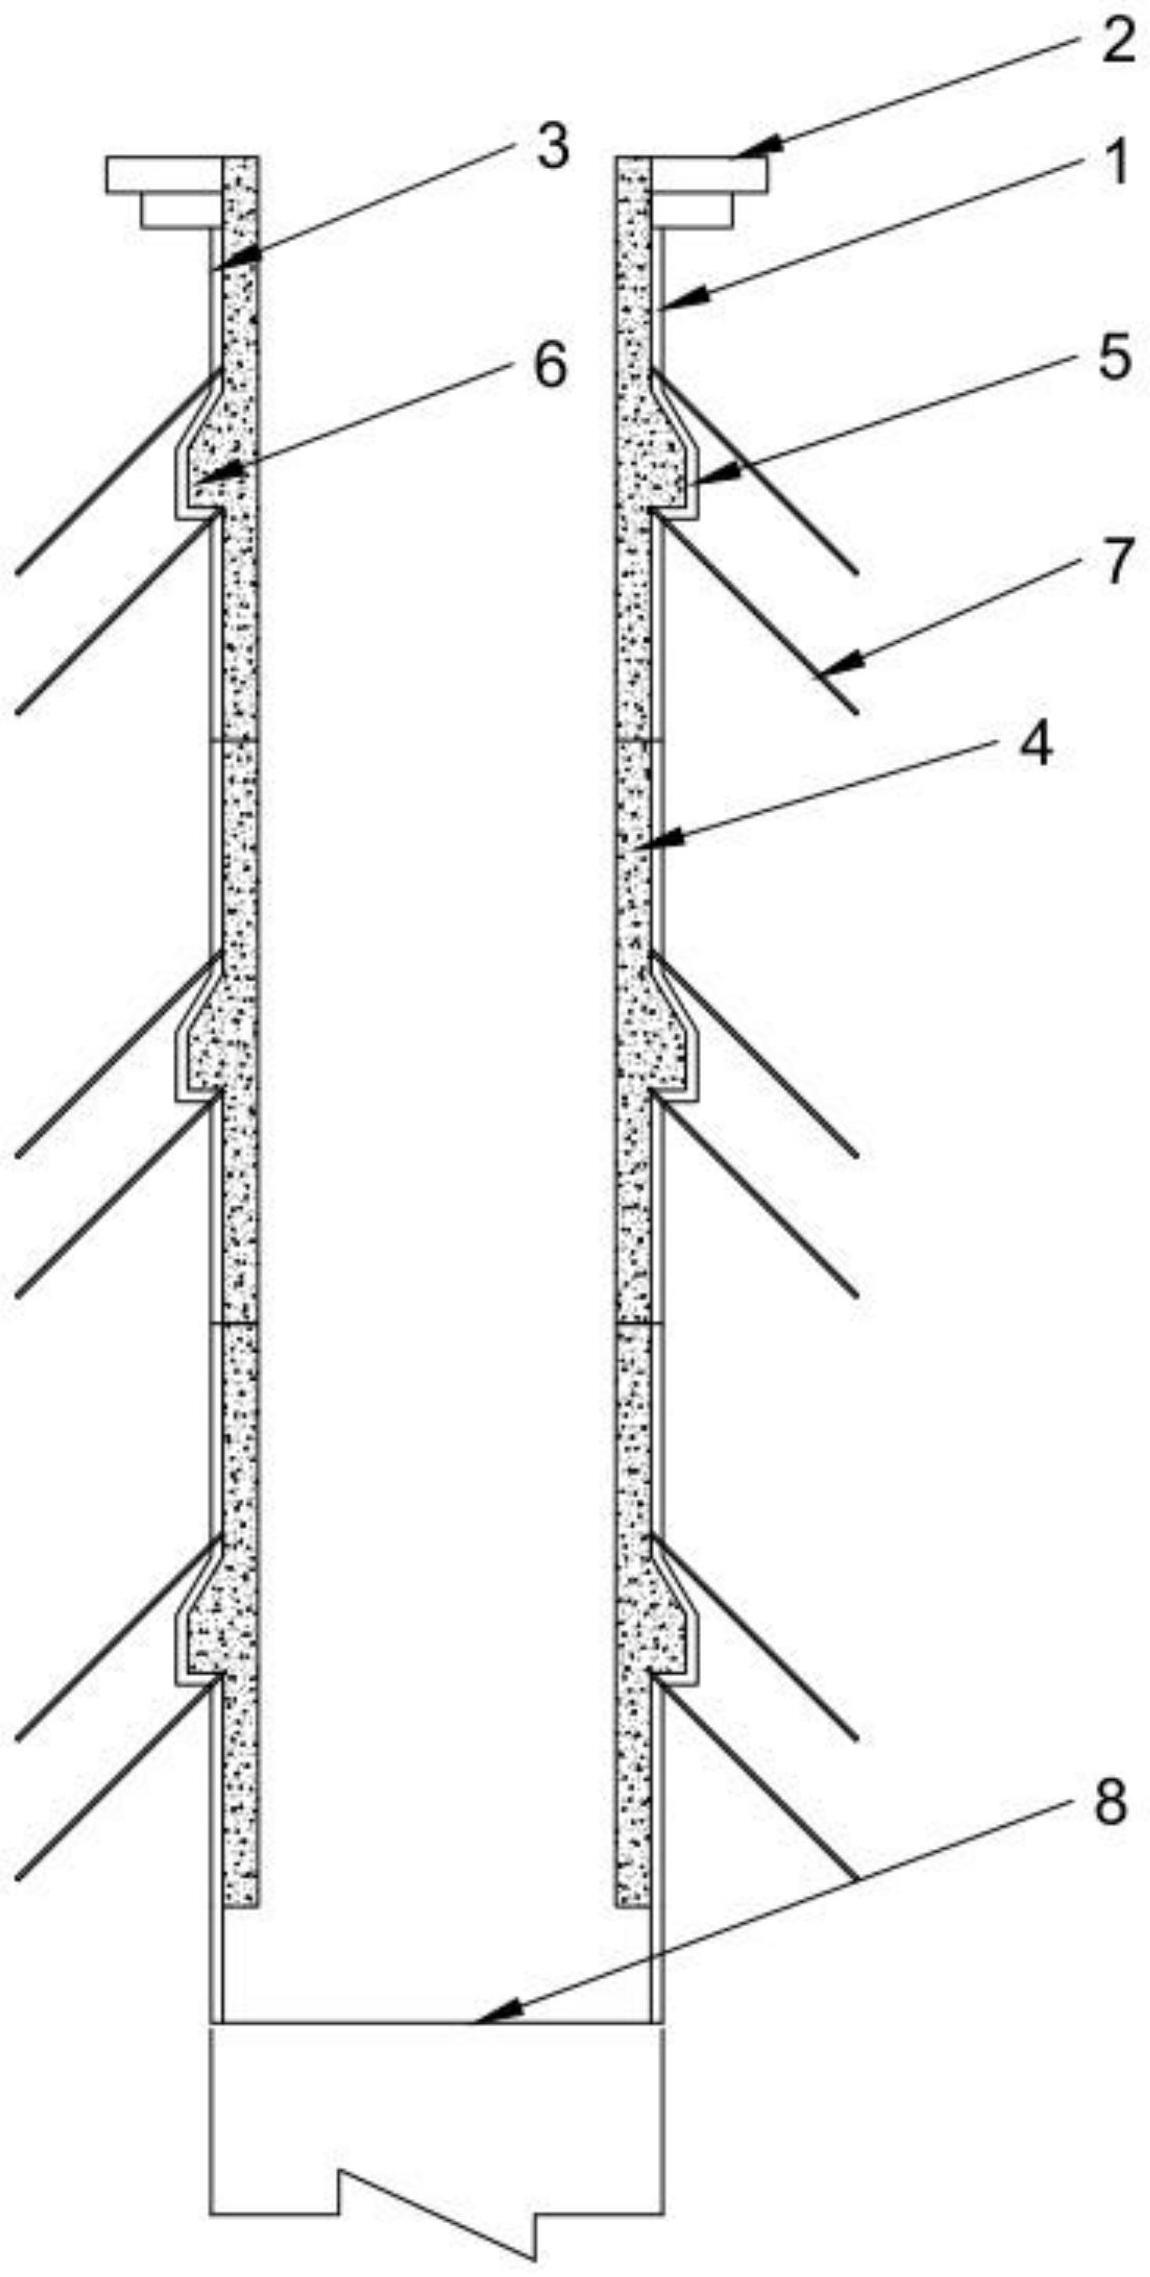 竖井预制衬砌结构及竖井开挖方法与流程